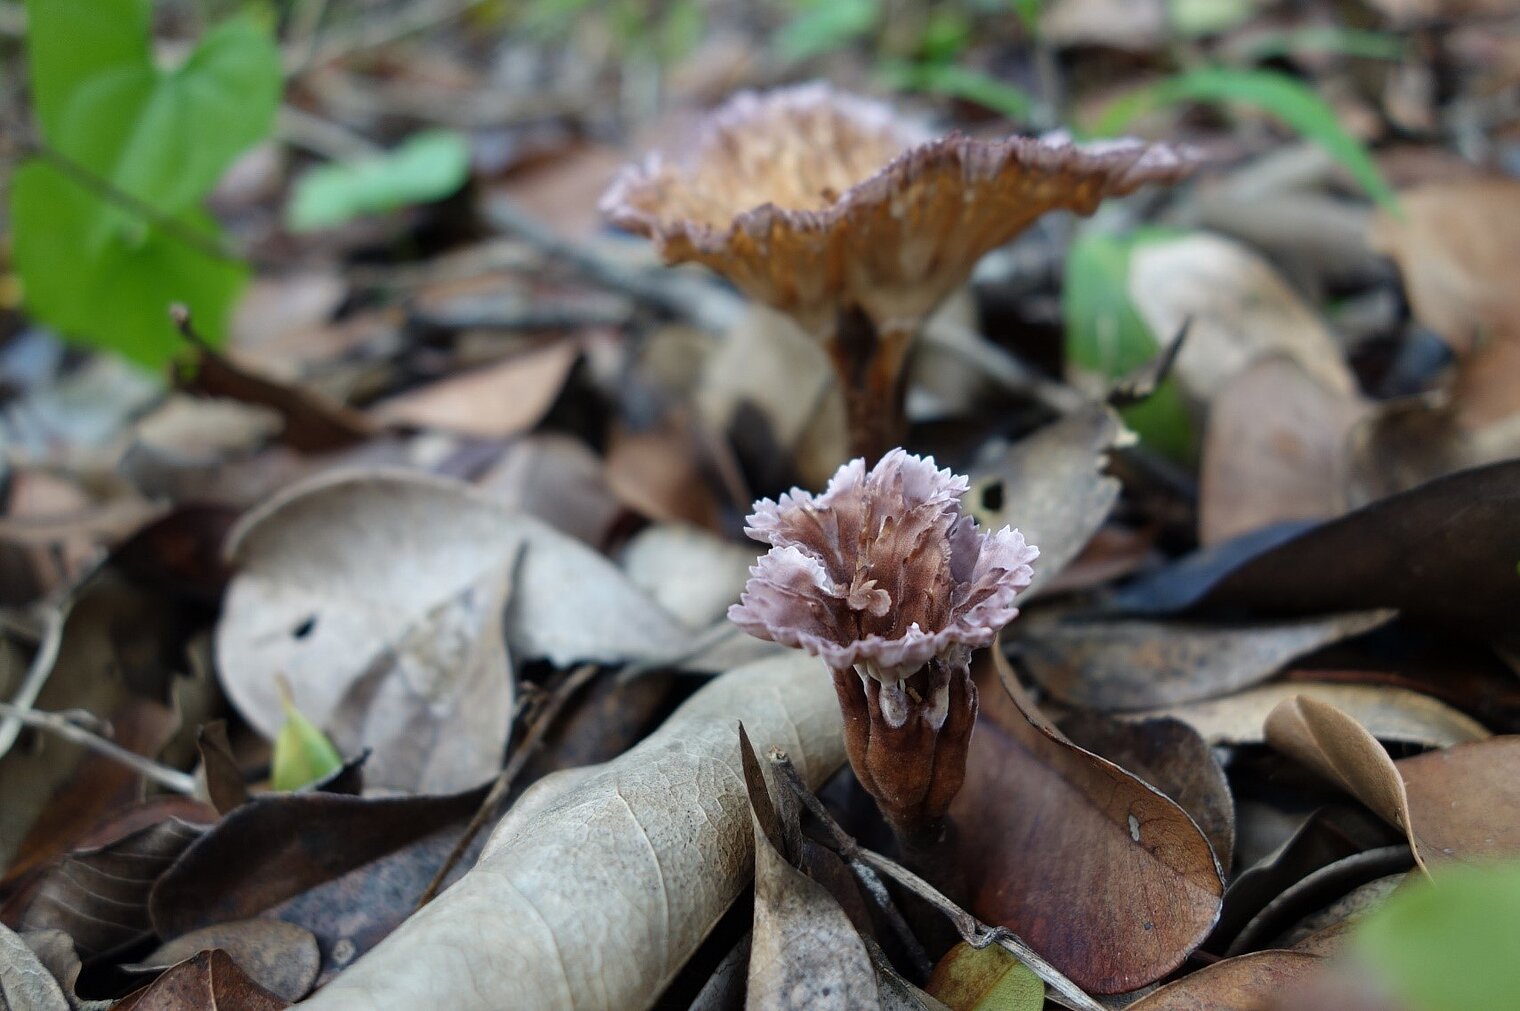 Pilz auf Waldboden